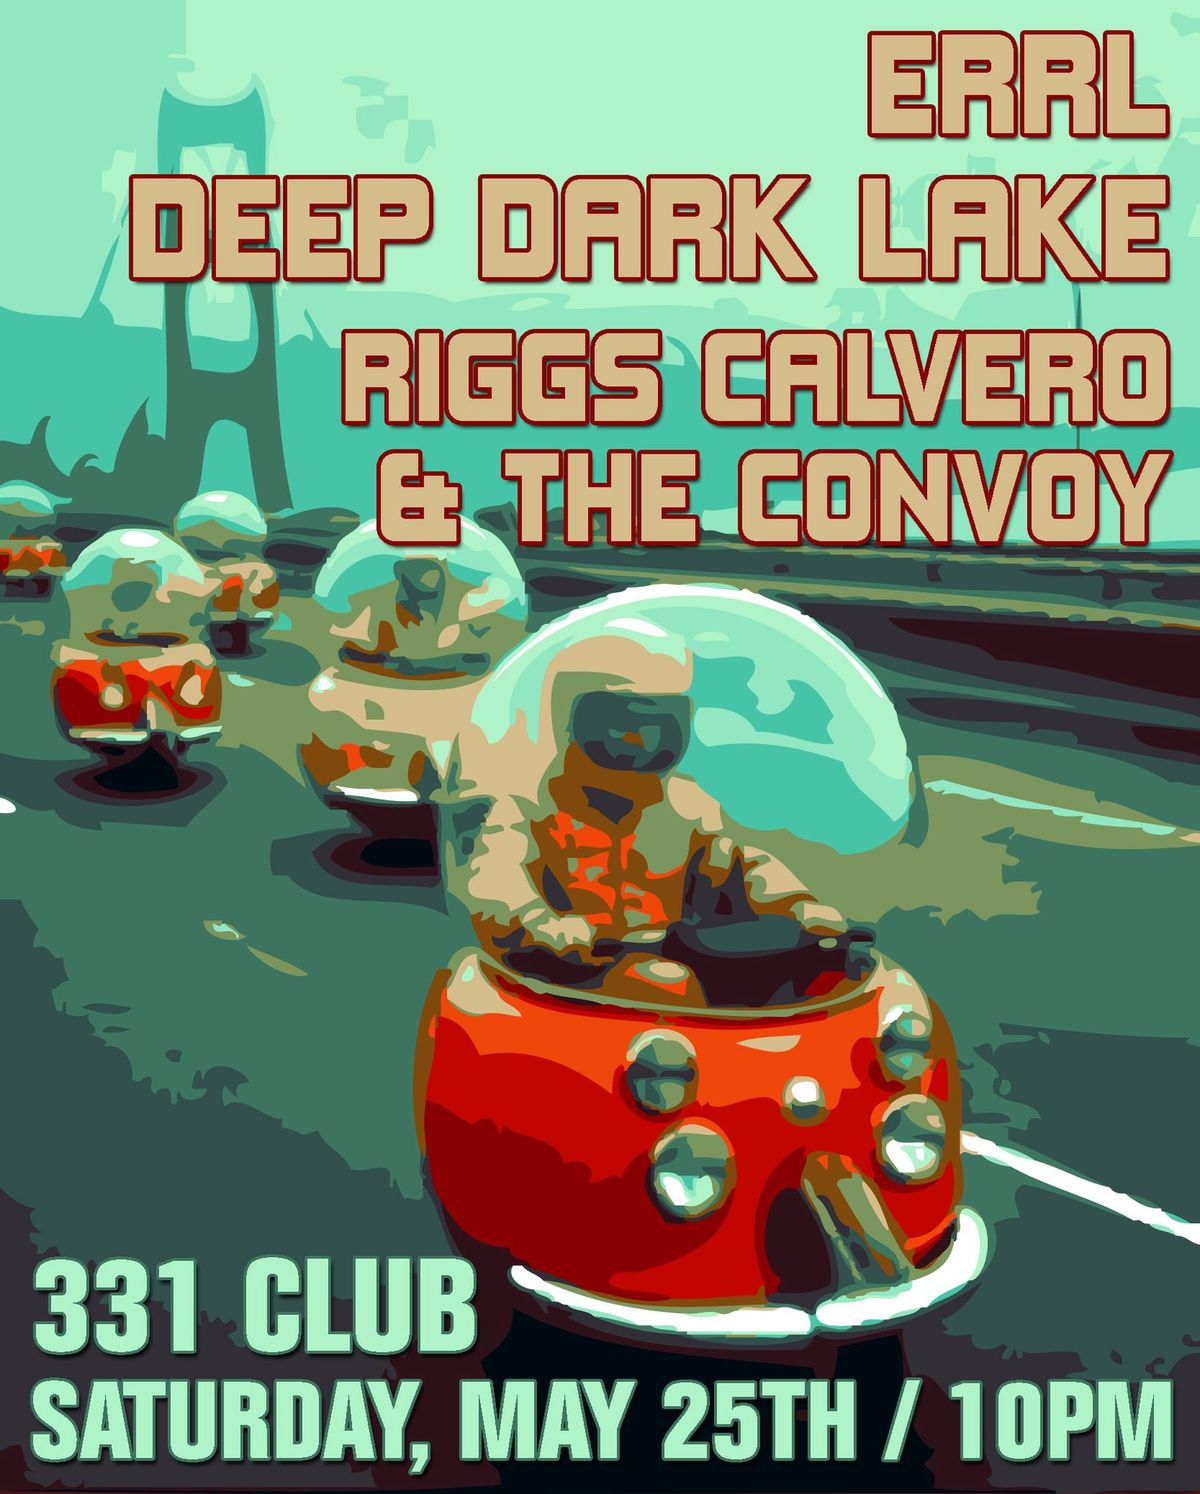 ERRL, Deep Dark Lake, Riggs Calvero and the Convoy 